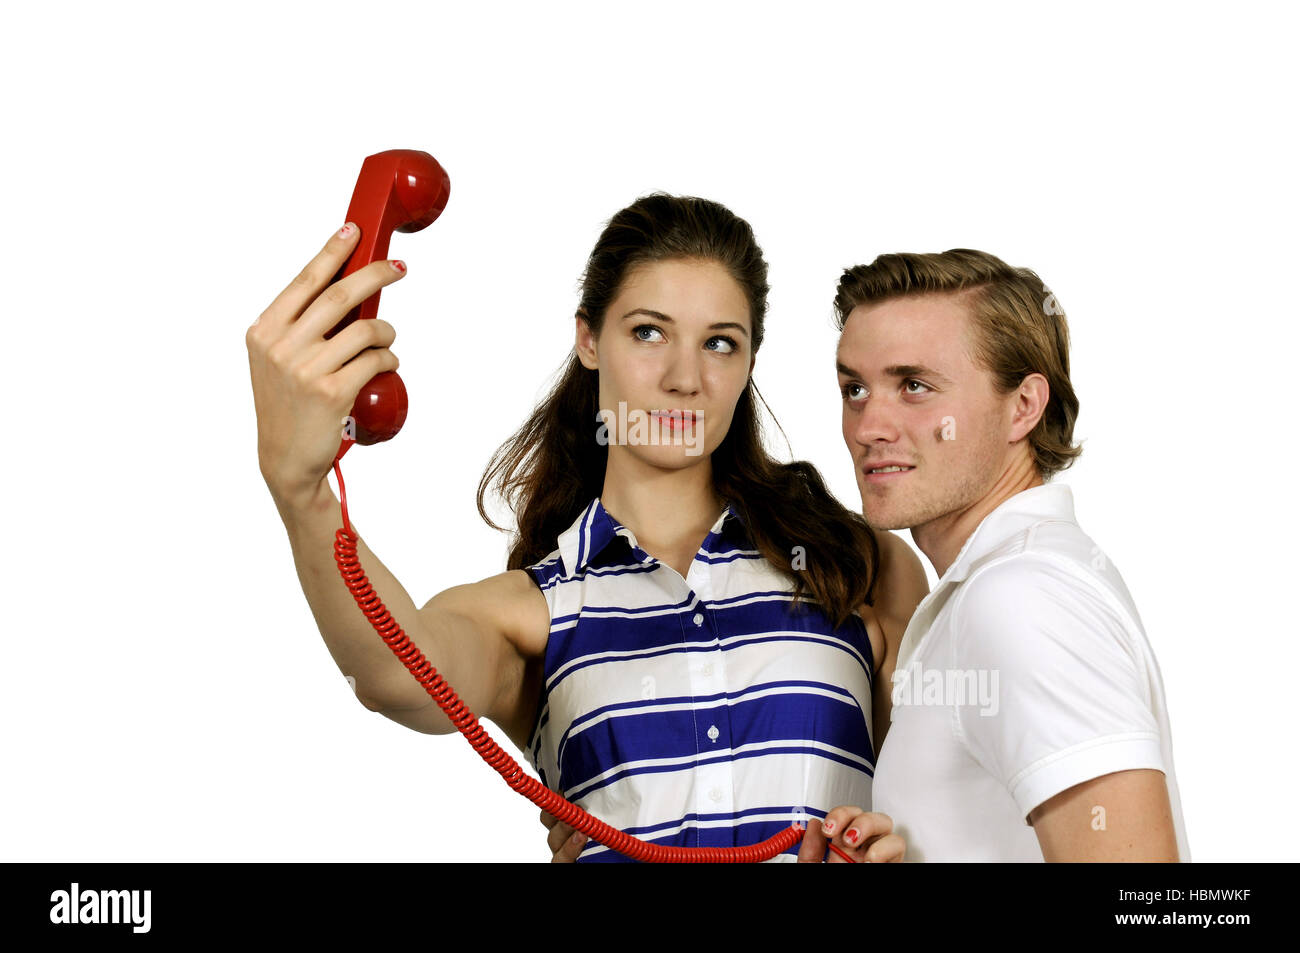 Frau und Mann unter einem selfie Stockfoto